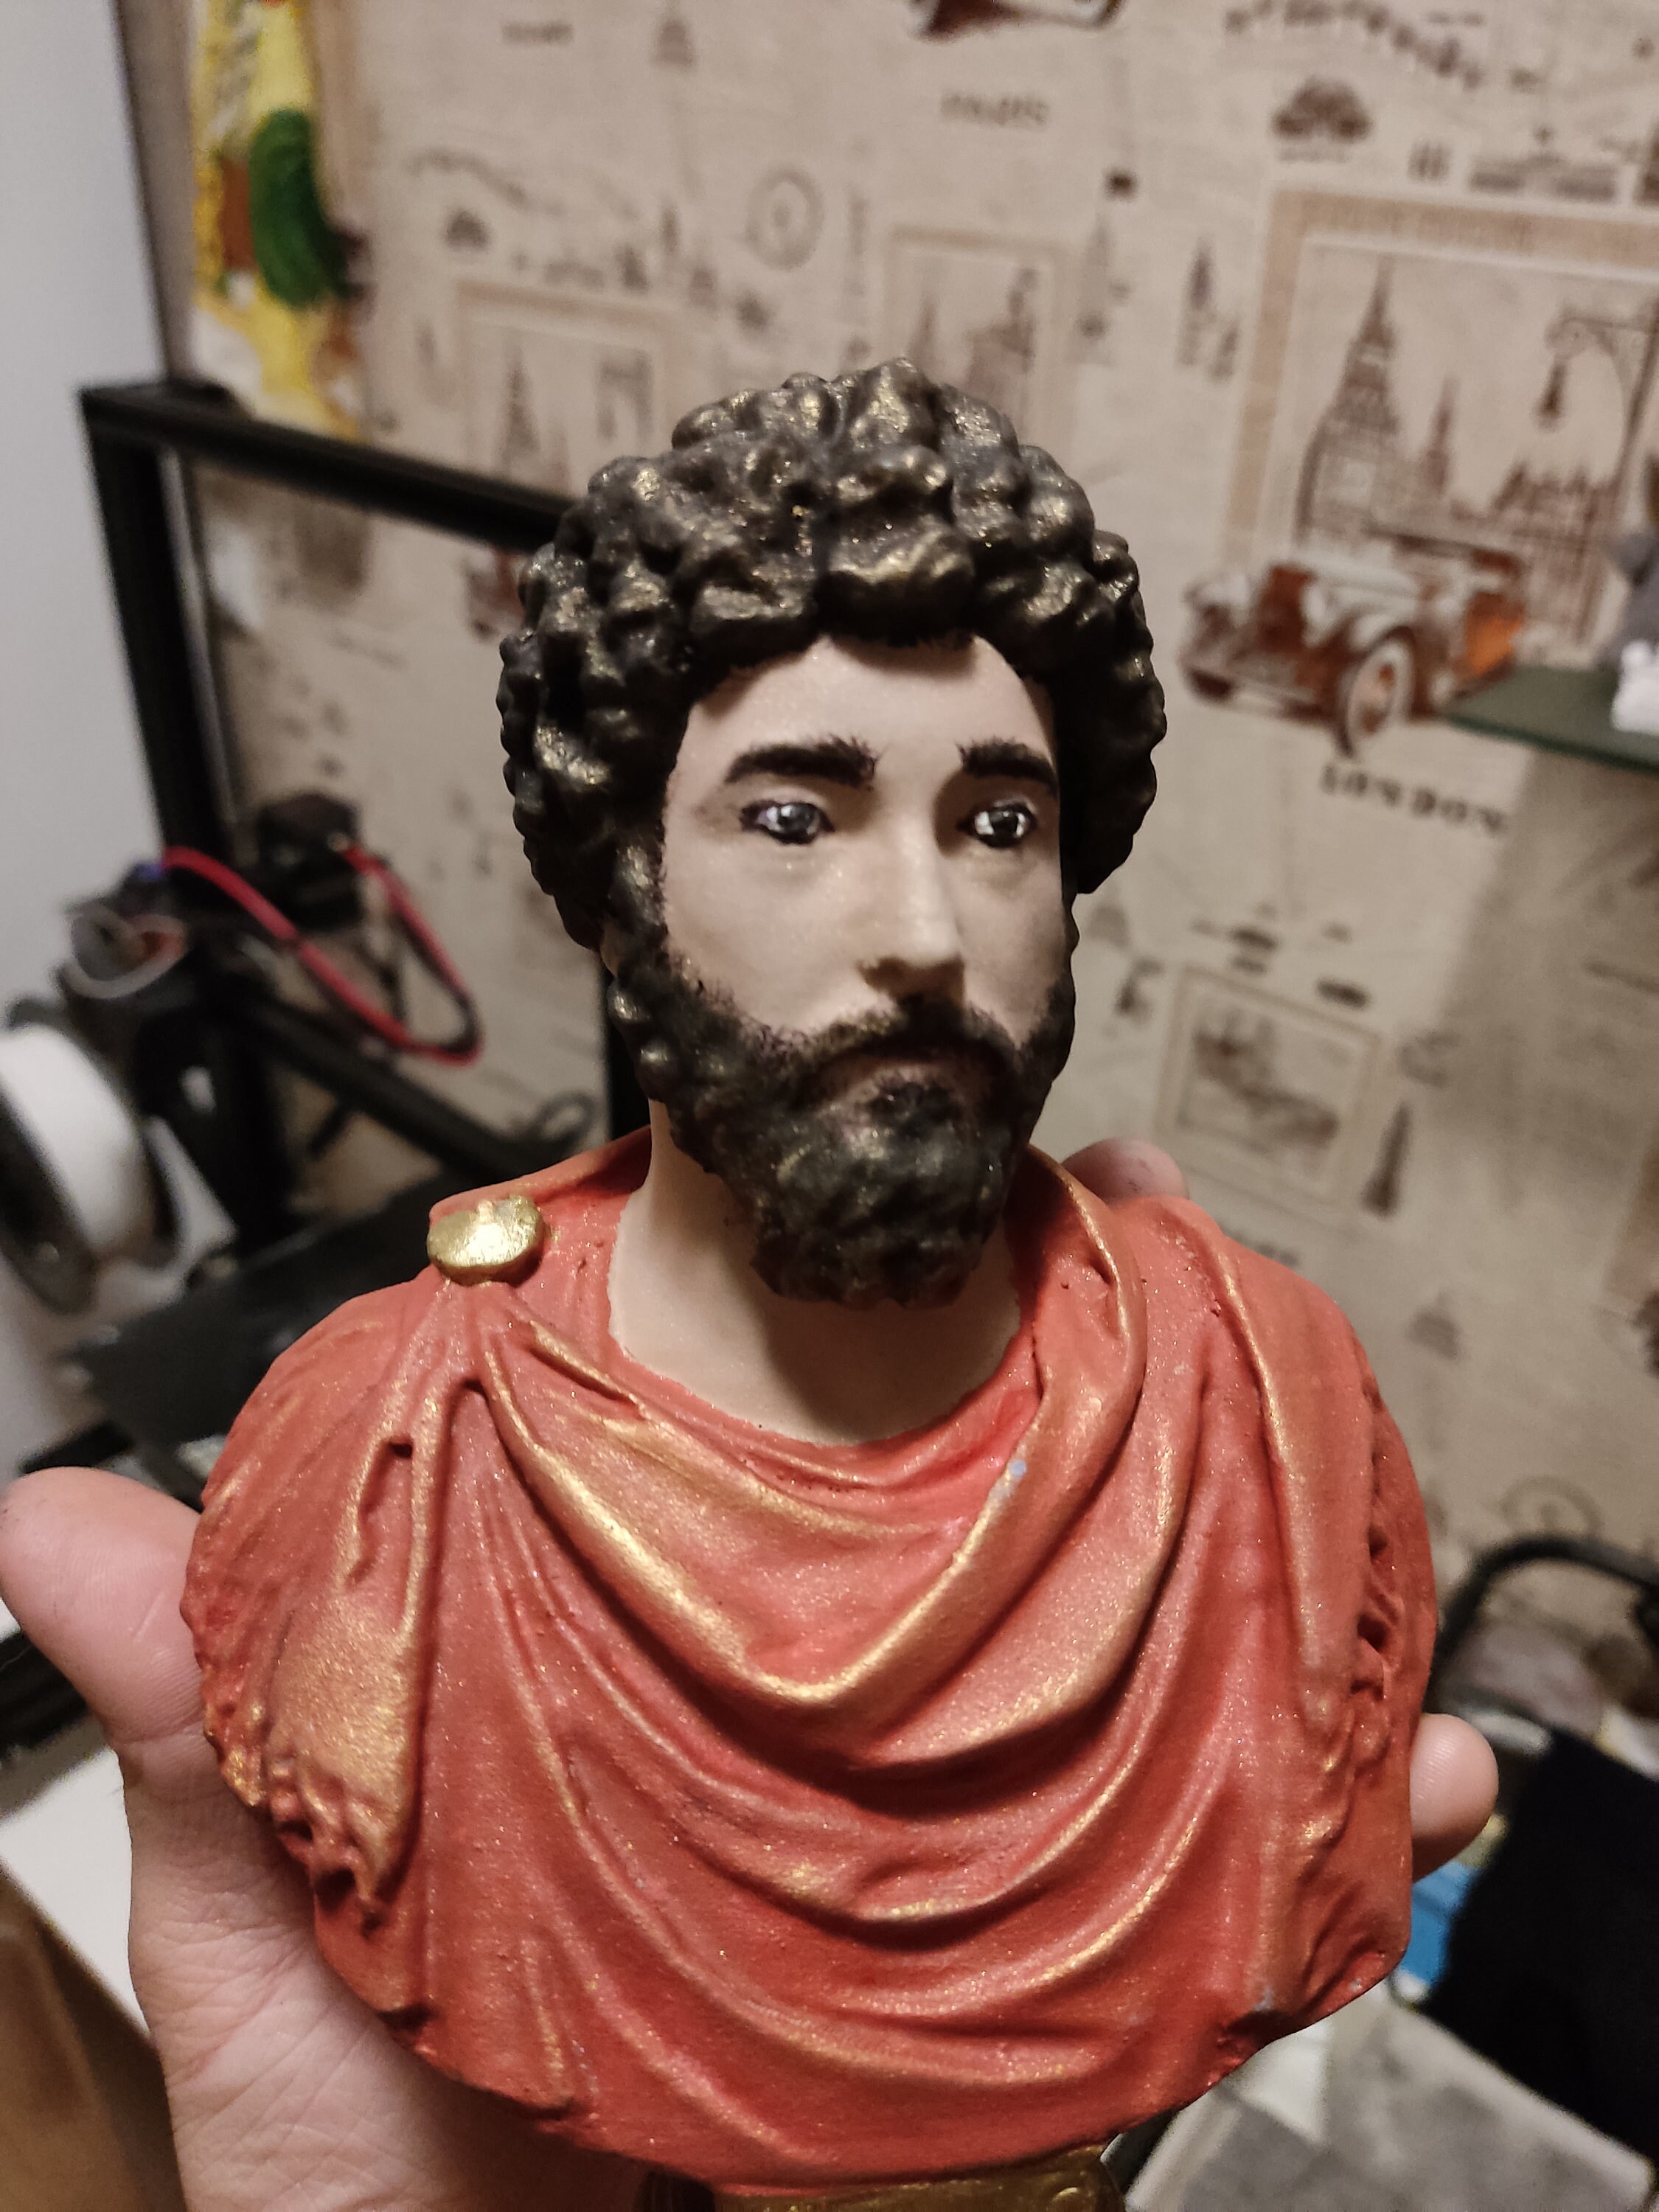 Marco Aurelio busto imperatore romano meditazioni stoicismo stoico  statuetta statuetta ispiratrice forte -  Italia